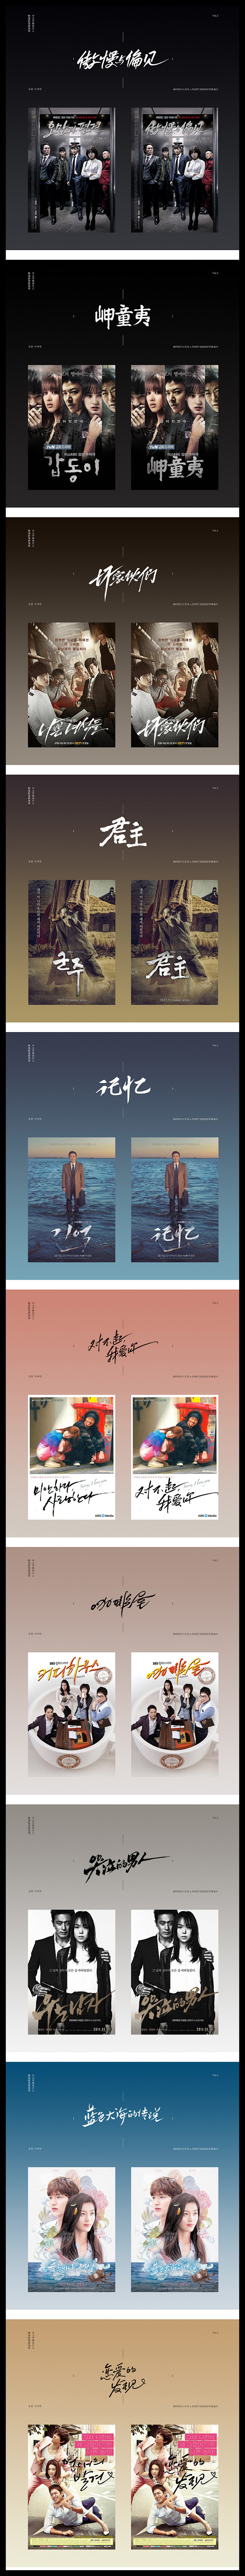 韩国电影海报设计 影视剧海报 字体设计 ...